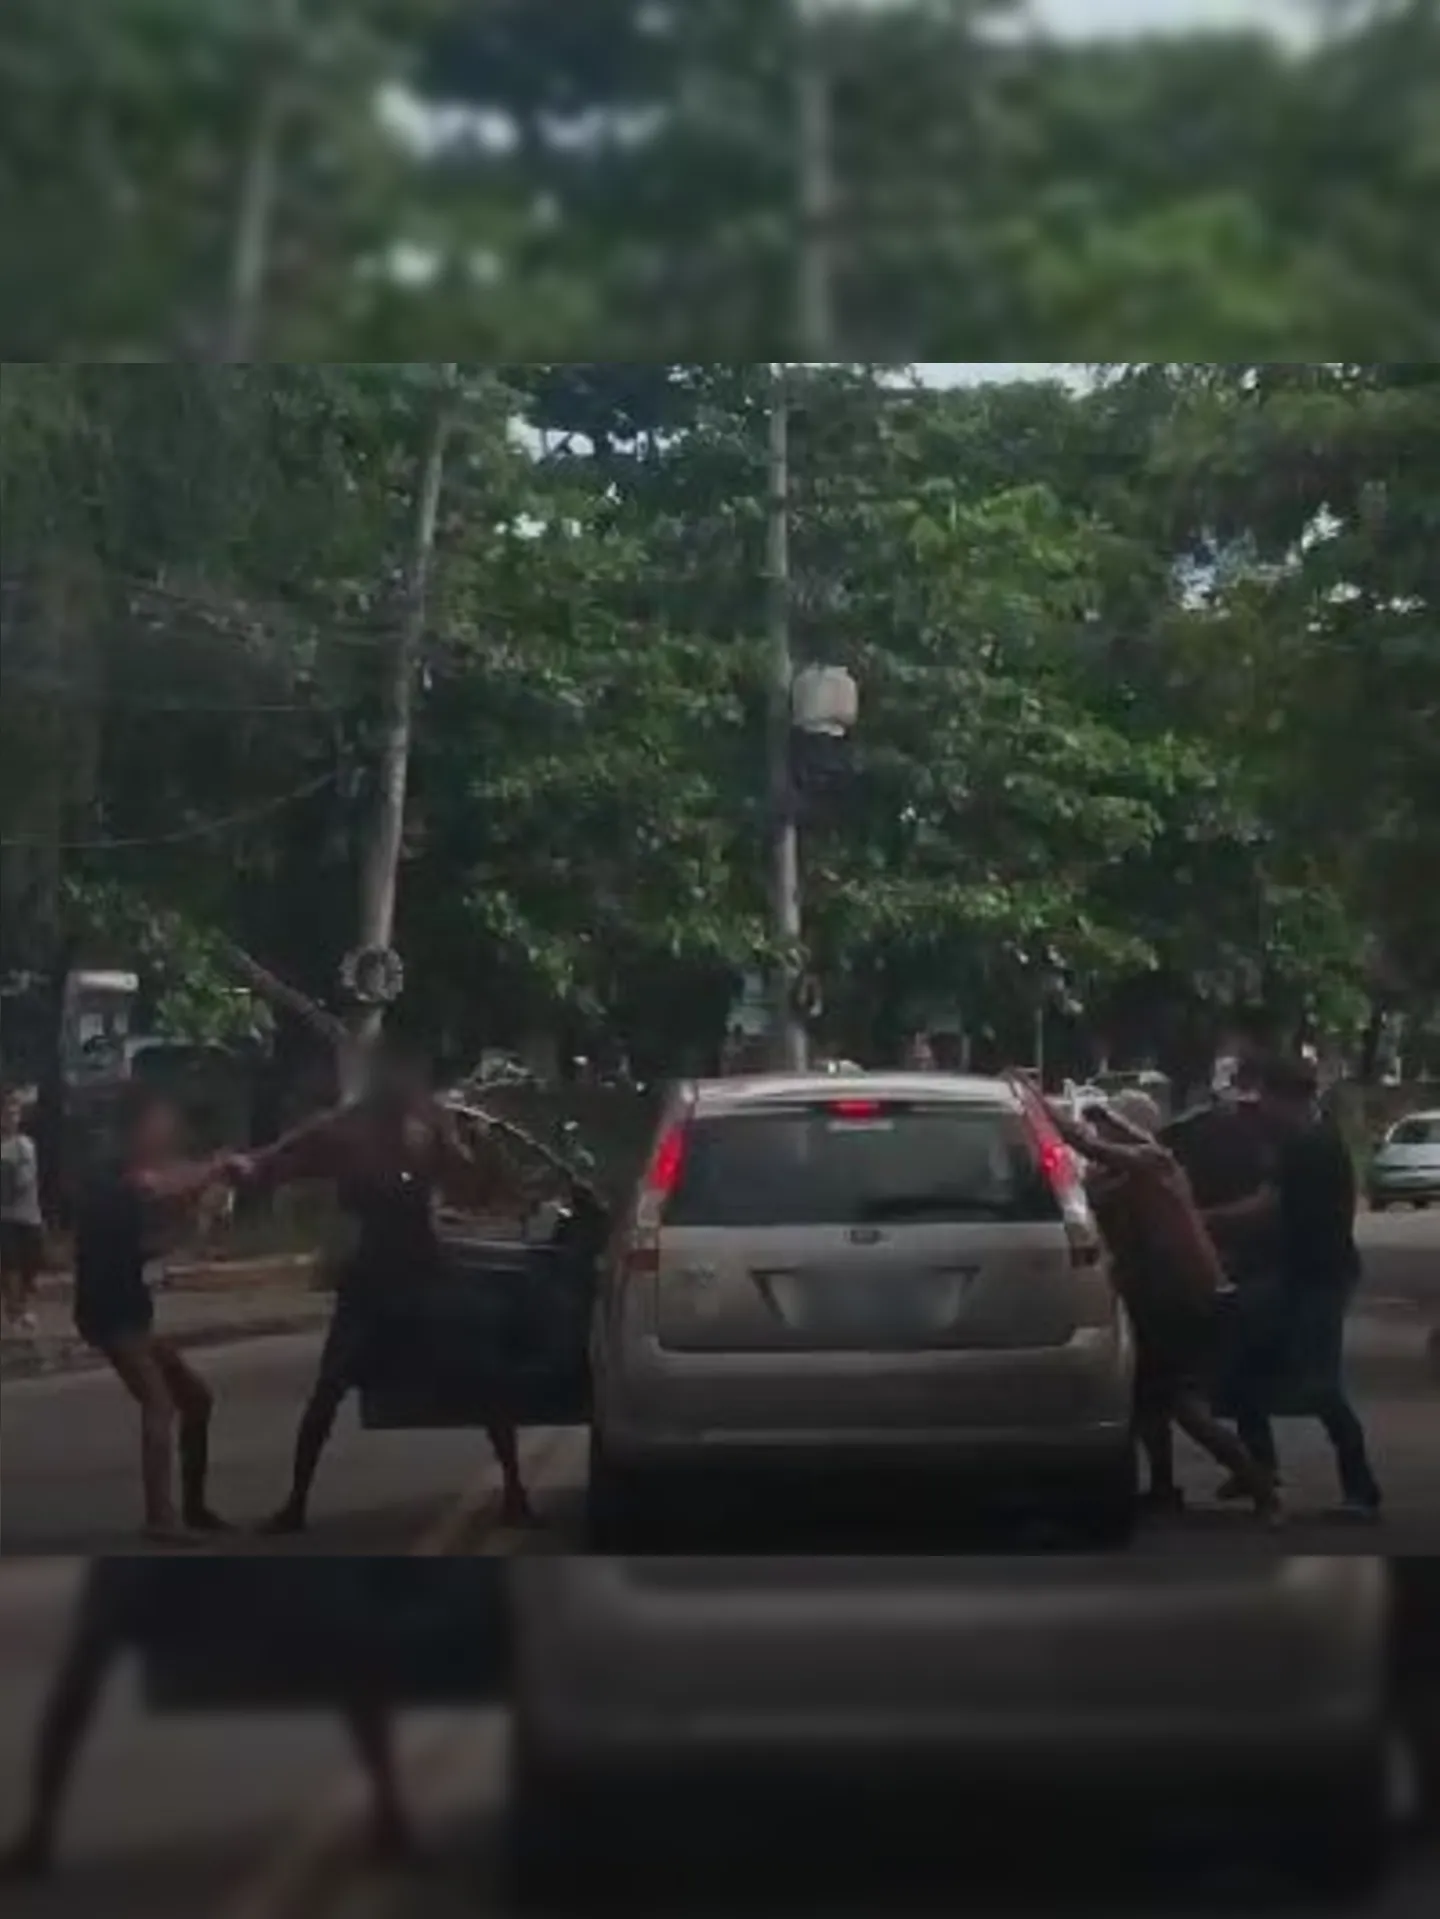 Nas imagens, é possível observar um homem sendo agredido dentro de um carro